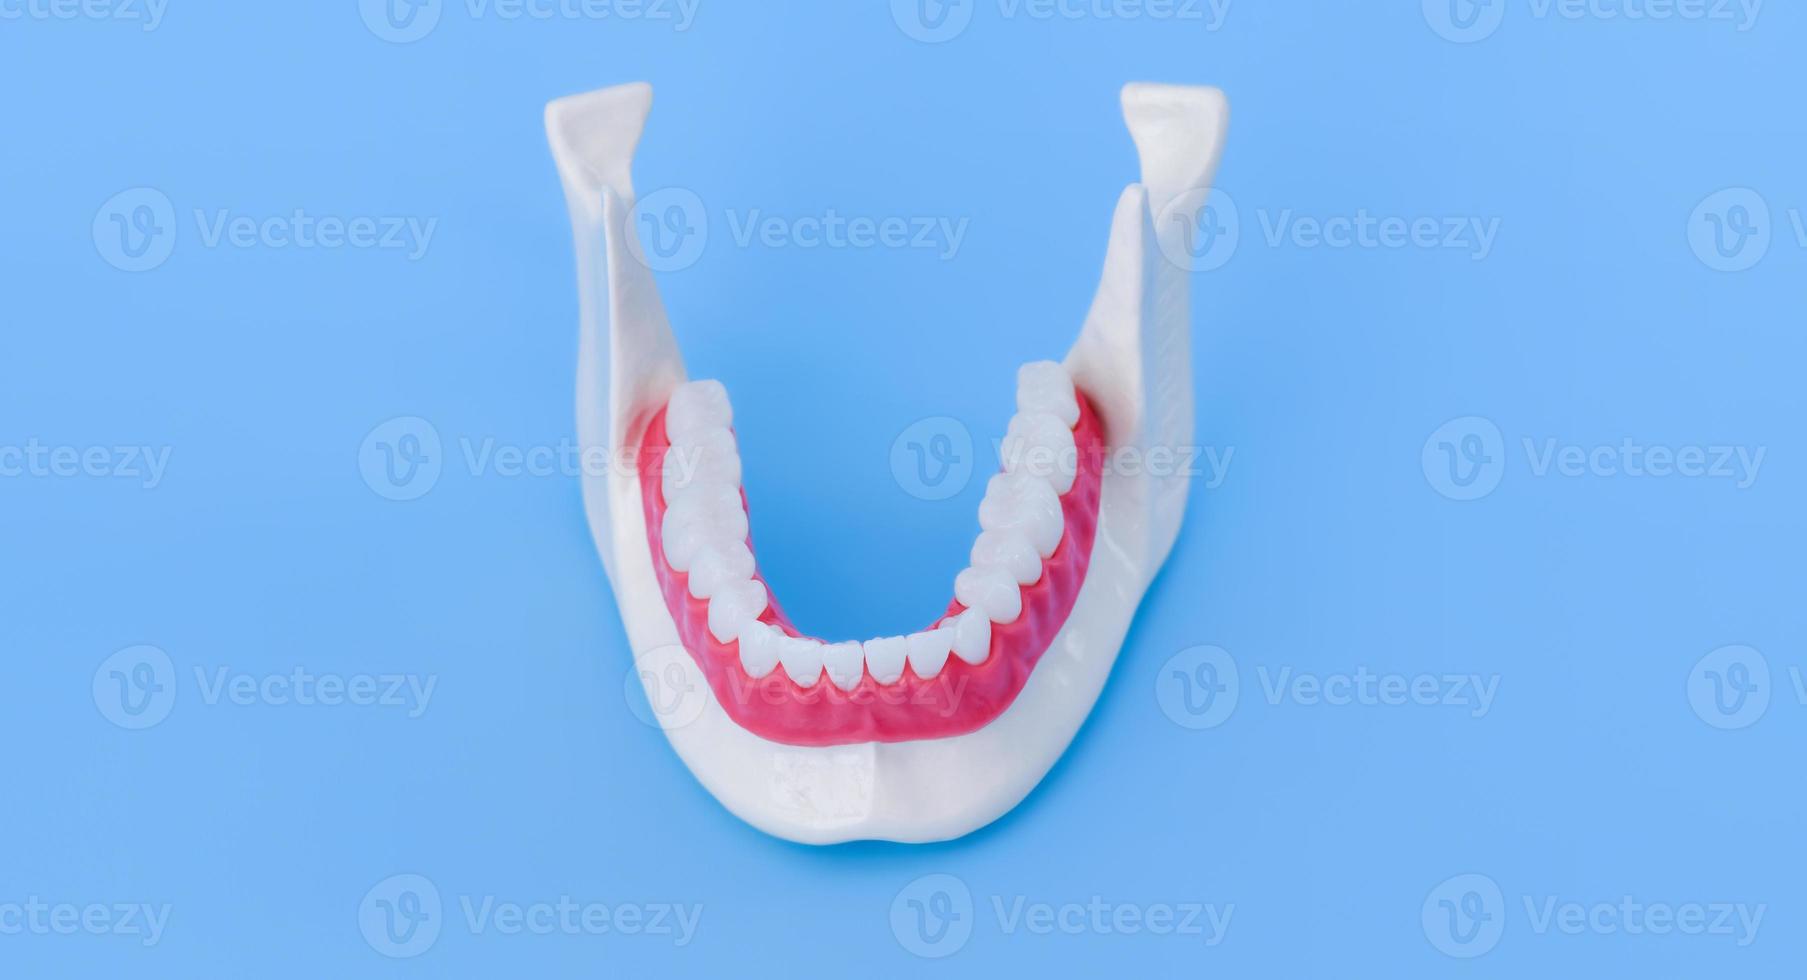 mandíbula humana inferior con modelo de anatomía de dientes y encías foto